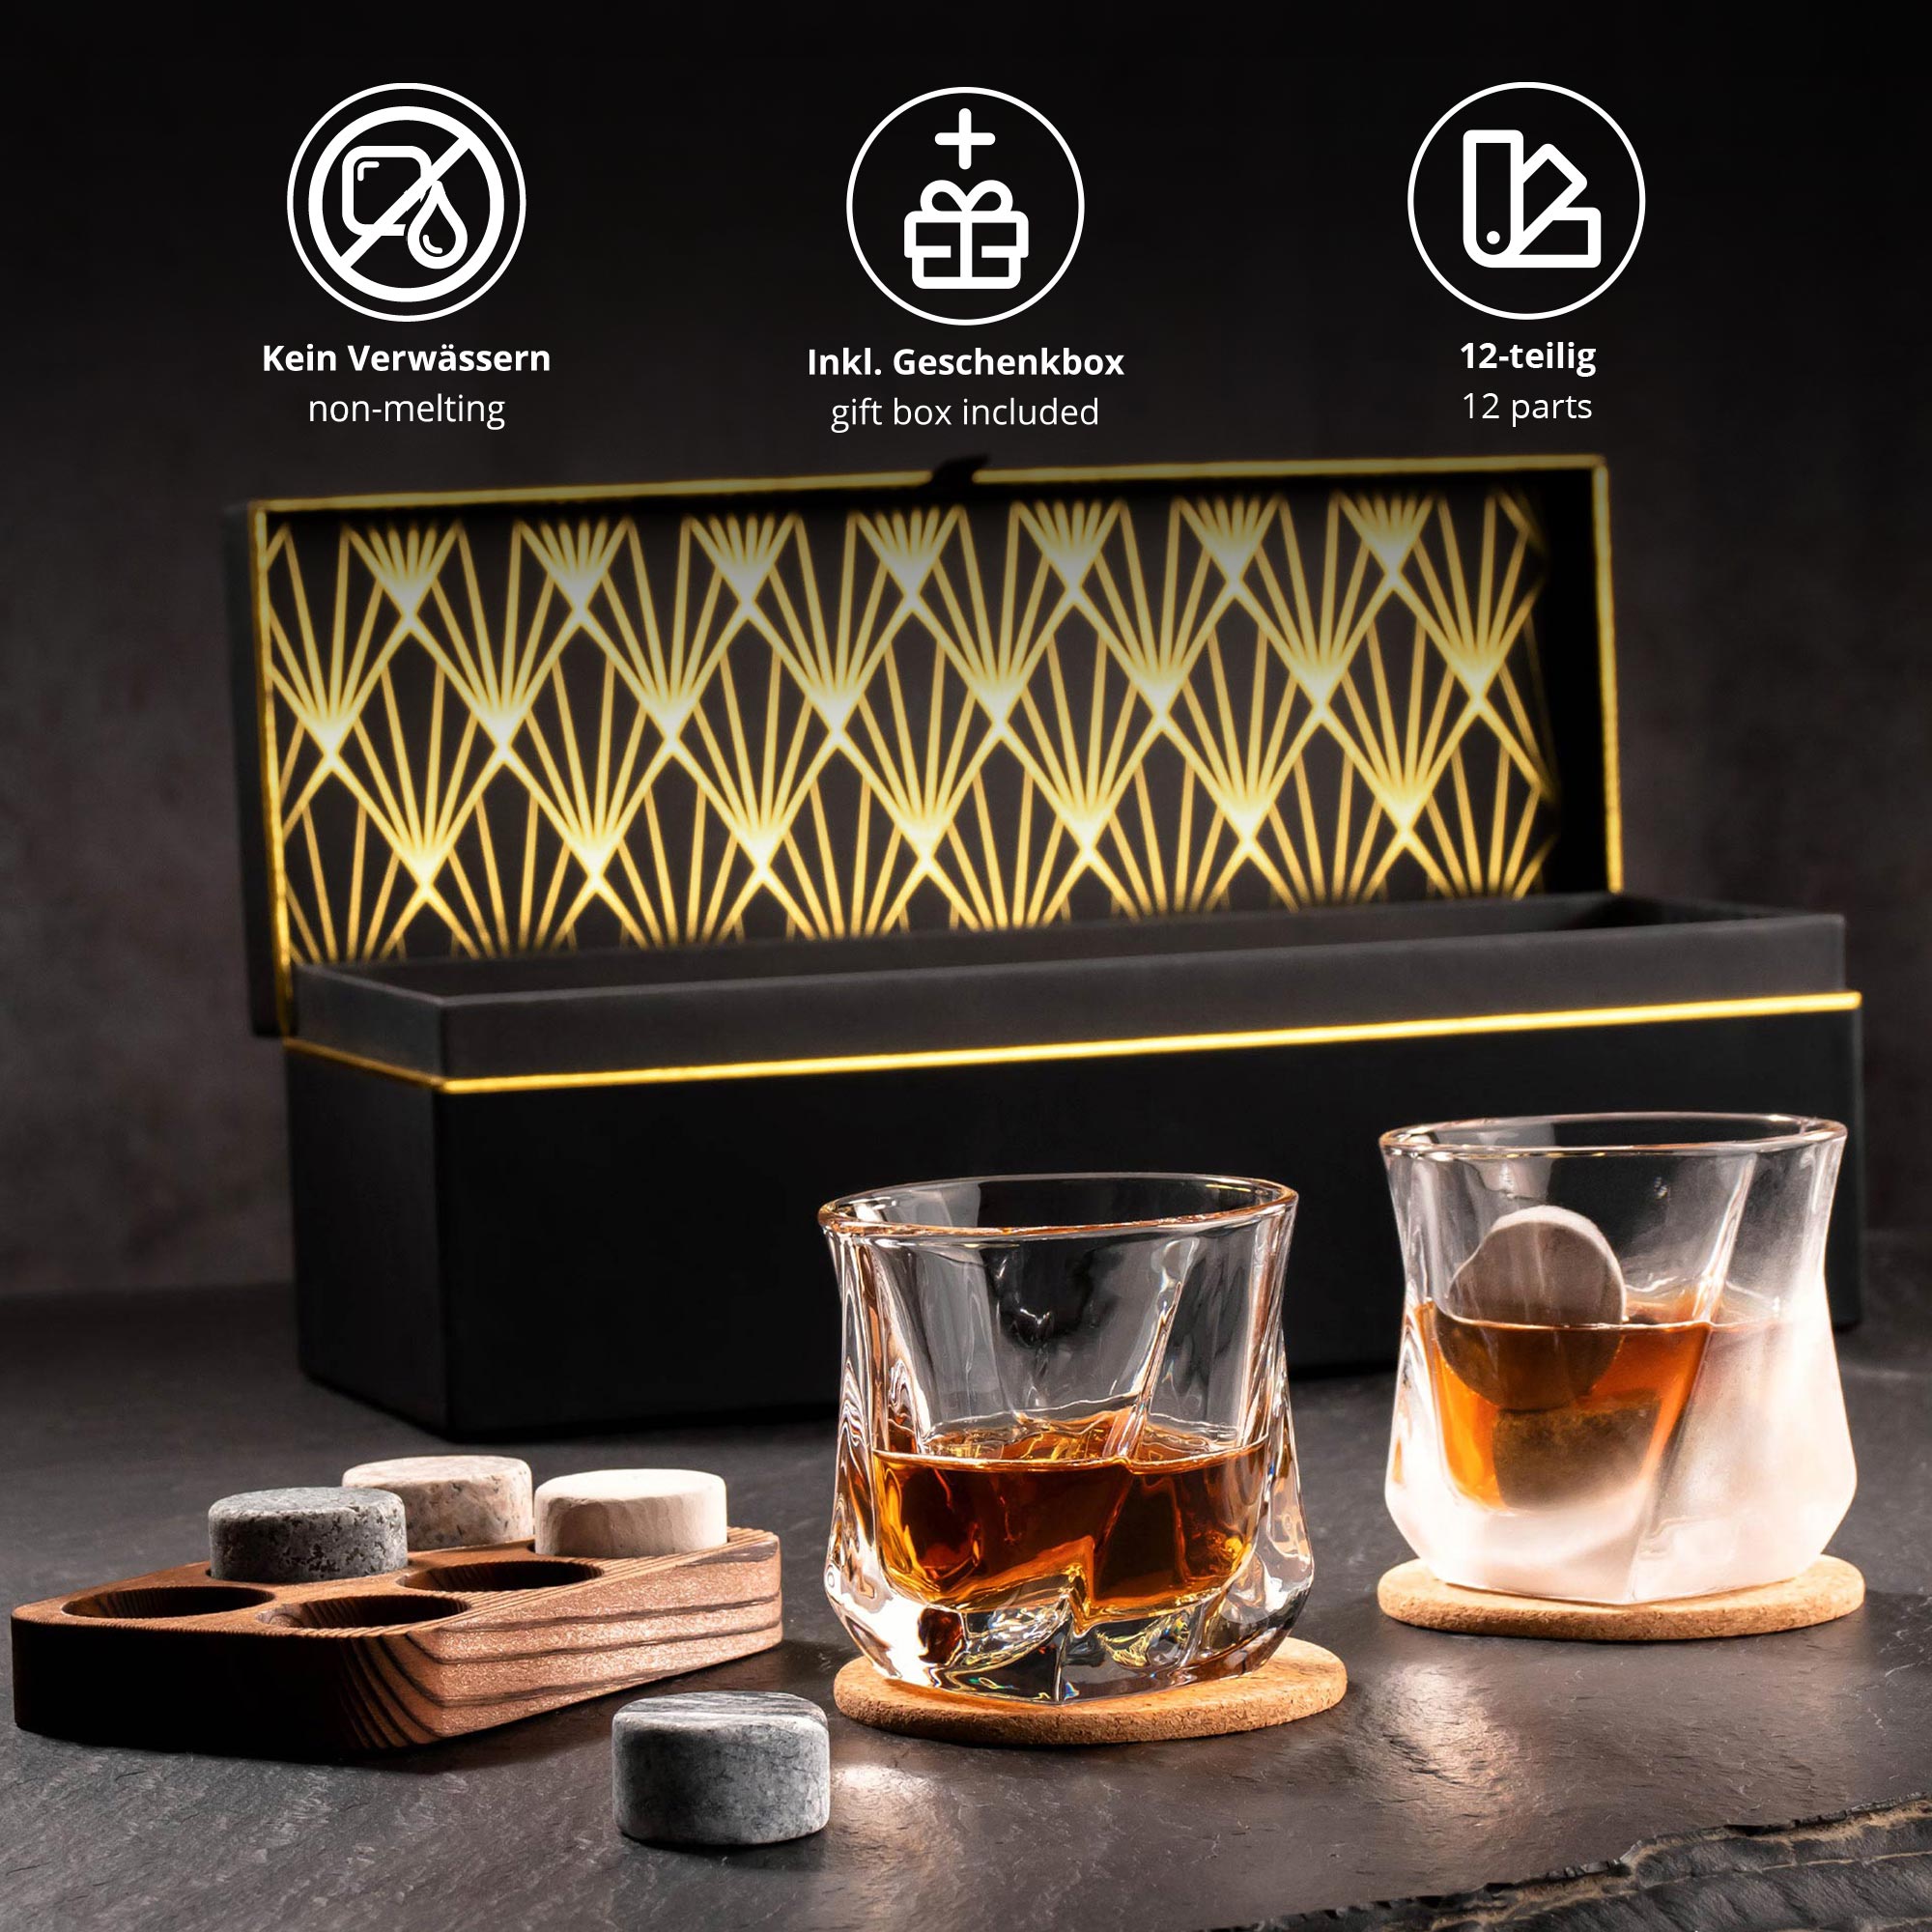 Whisky Geschenkset Deluxe personalisiert zum 30. Geburtstag 4